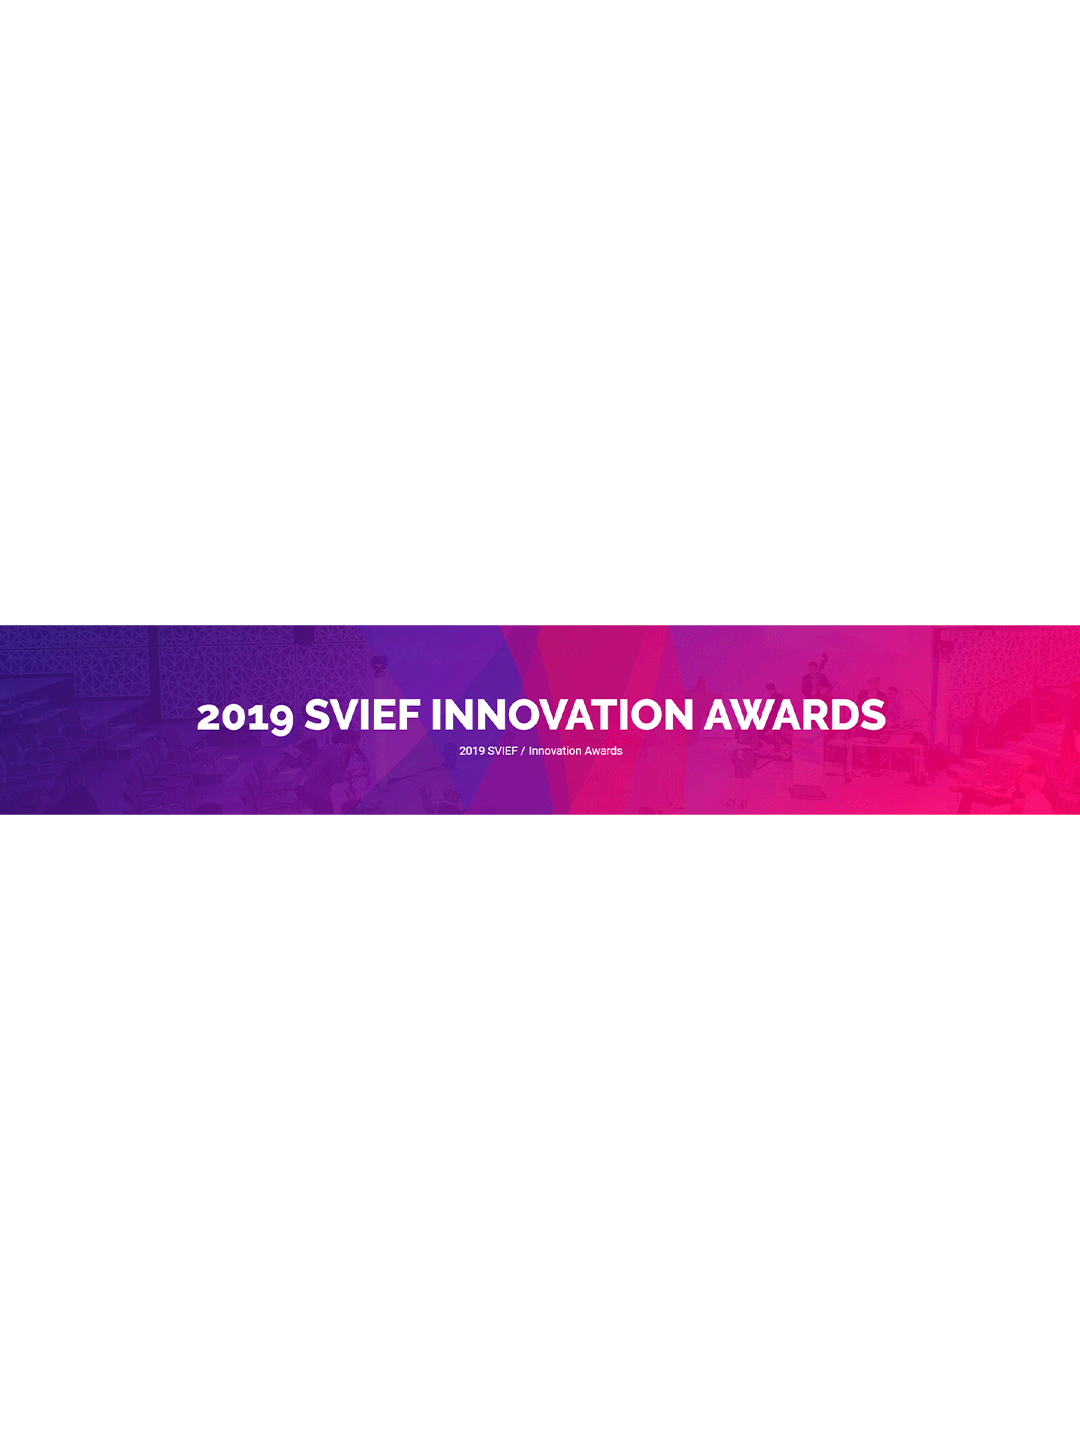 SVIEF Top 30 Best Innovation Award